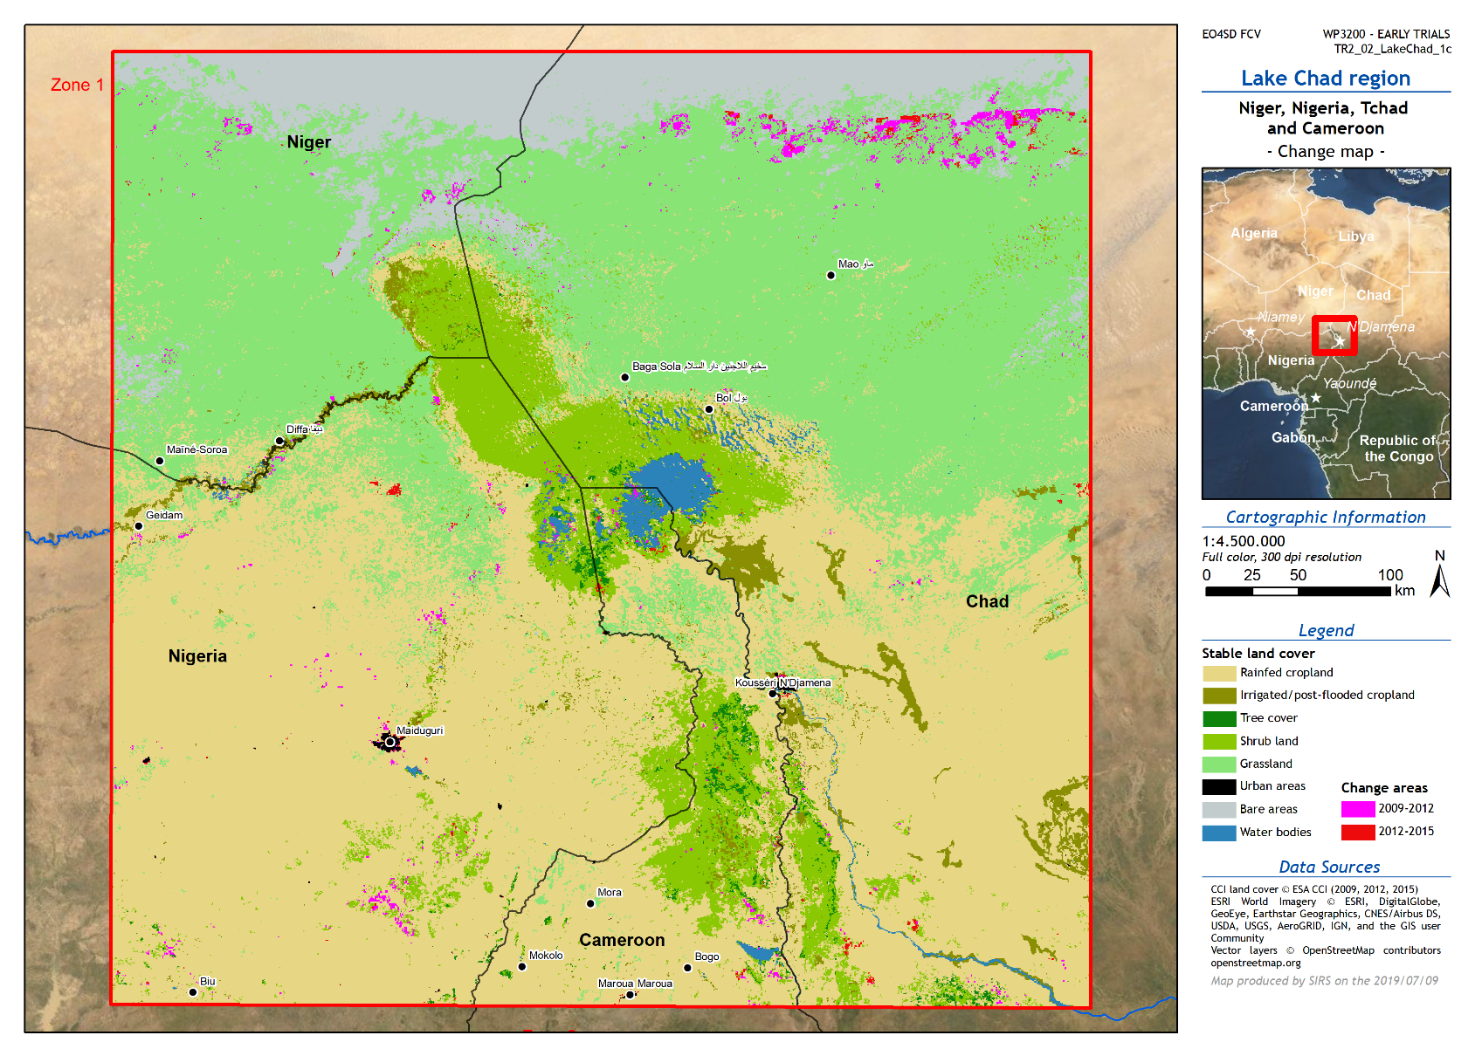 Dynamique de l’évolution de l’occupation des sols autour de lac Tchad à partir des données ESA Land Cover CCI